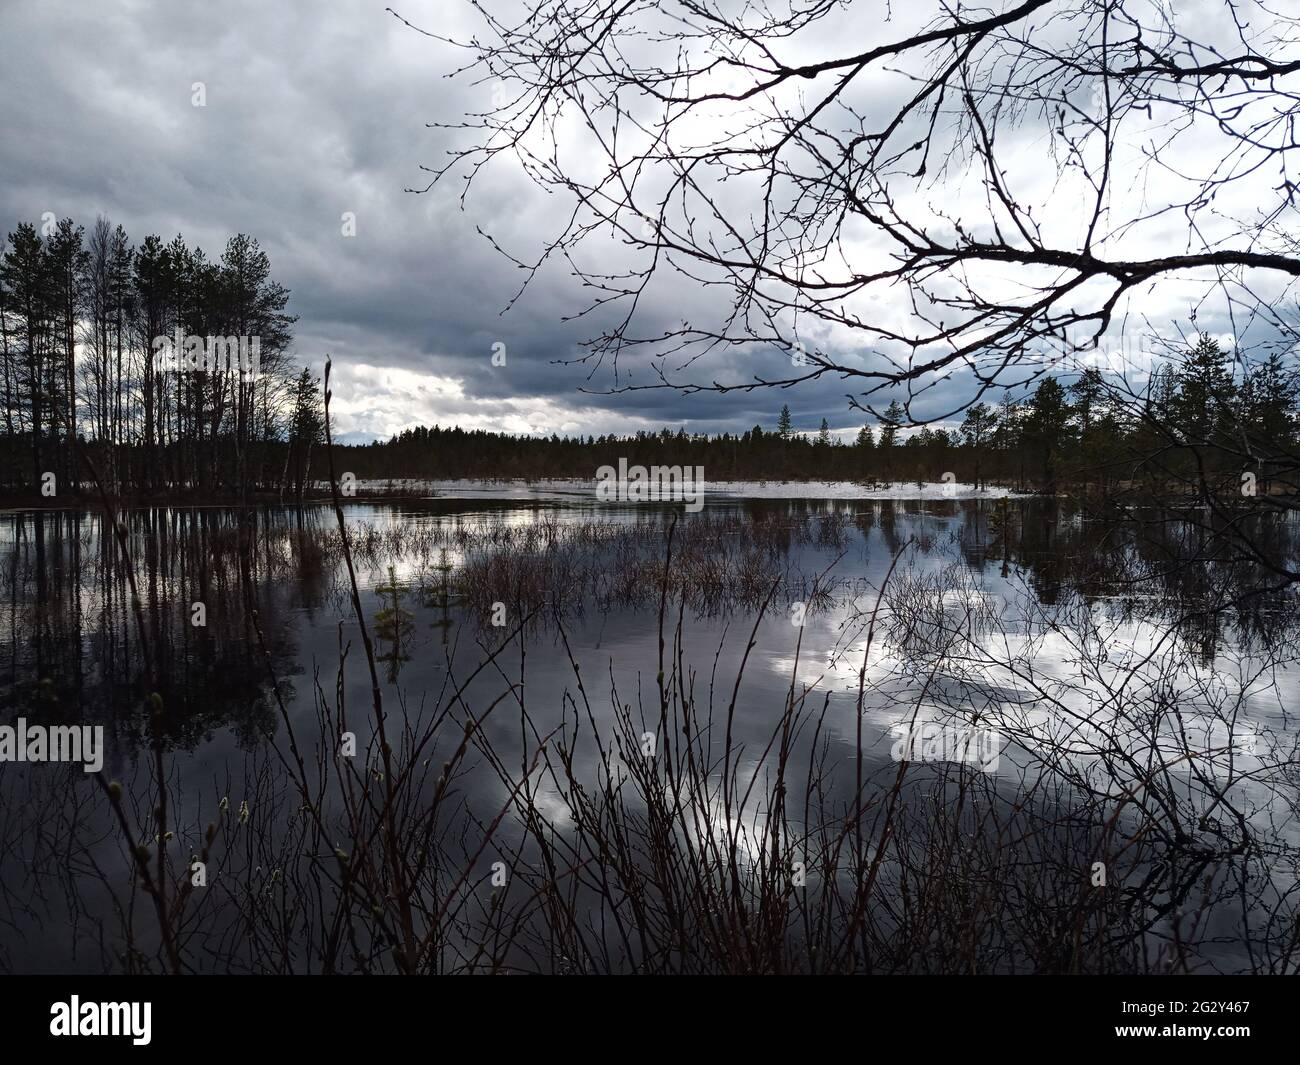 Foto de alto contraste de un pequeño lago en Laponia sueca. Foto de stock